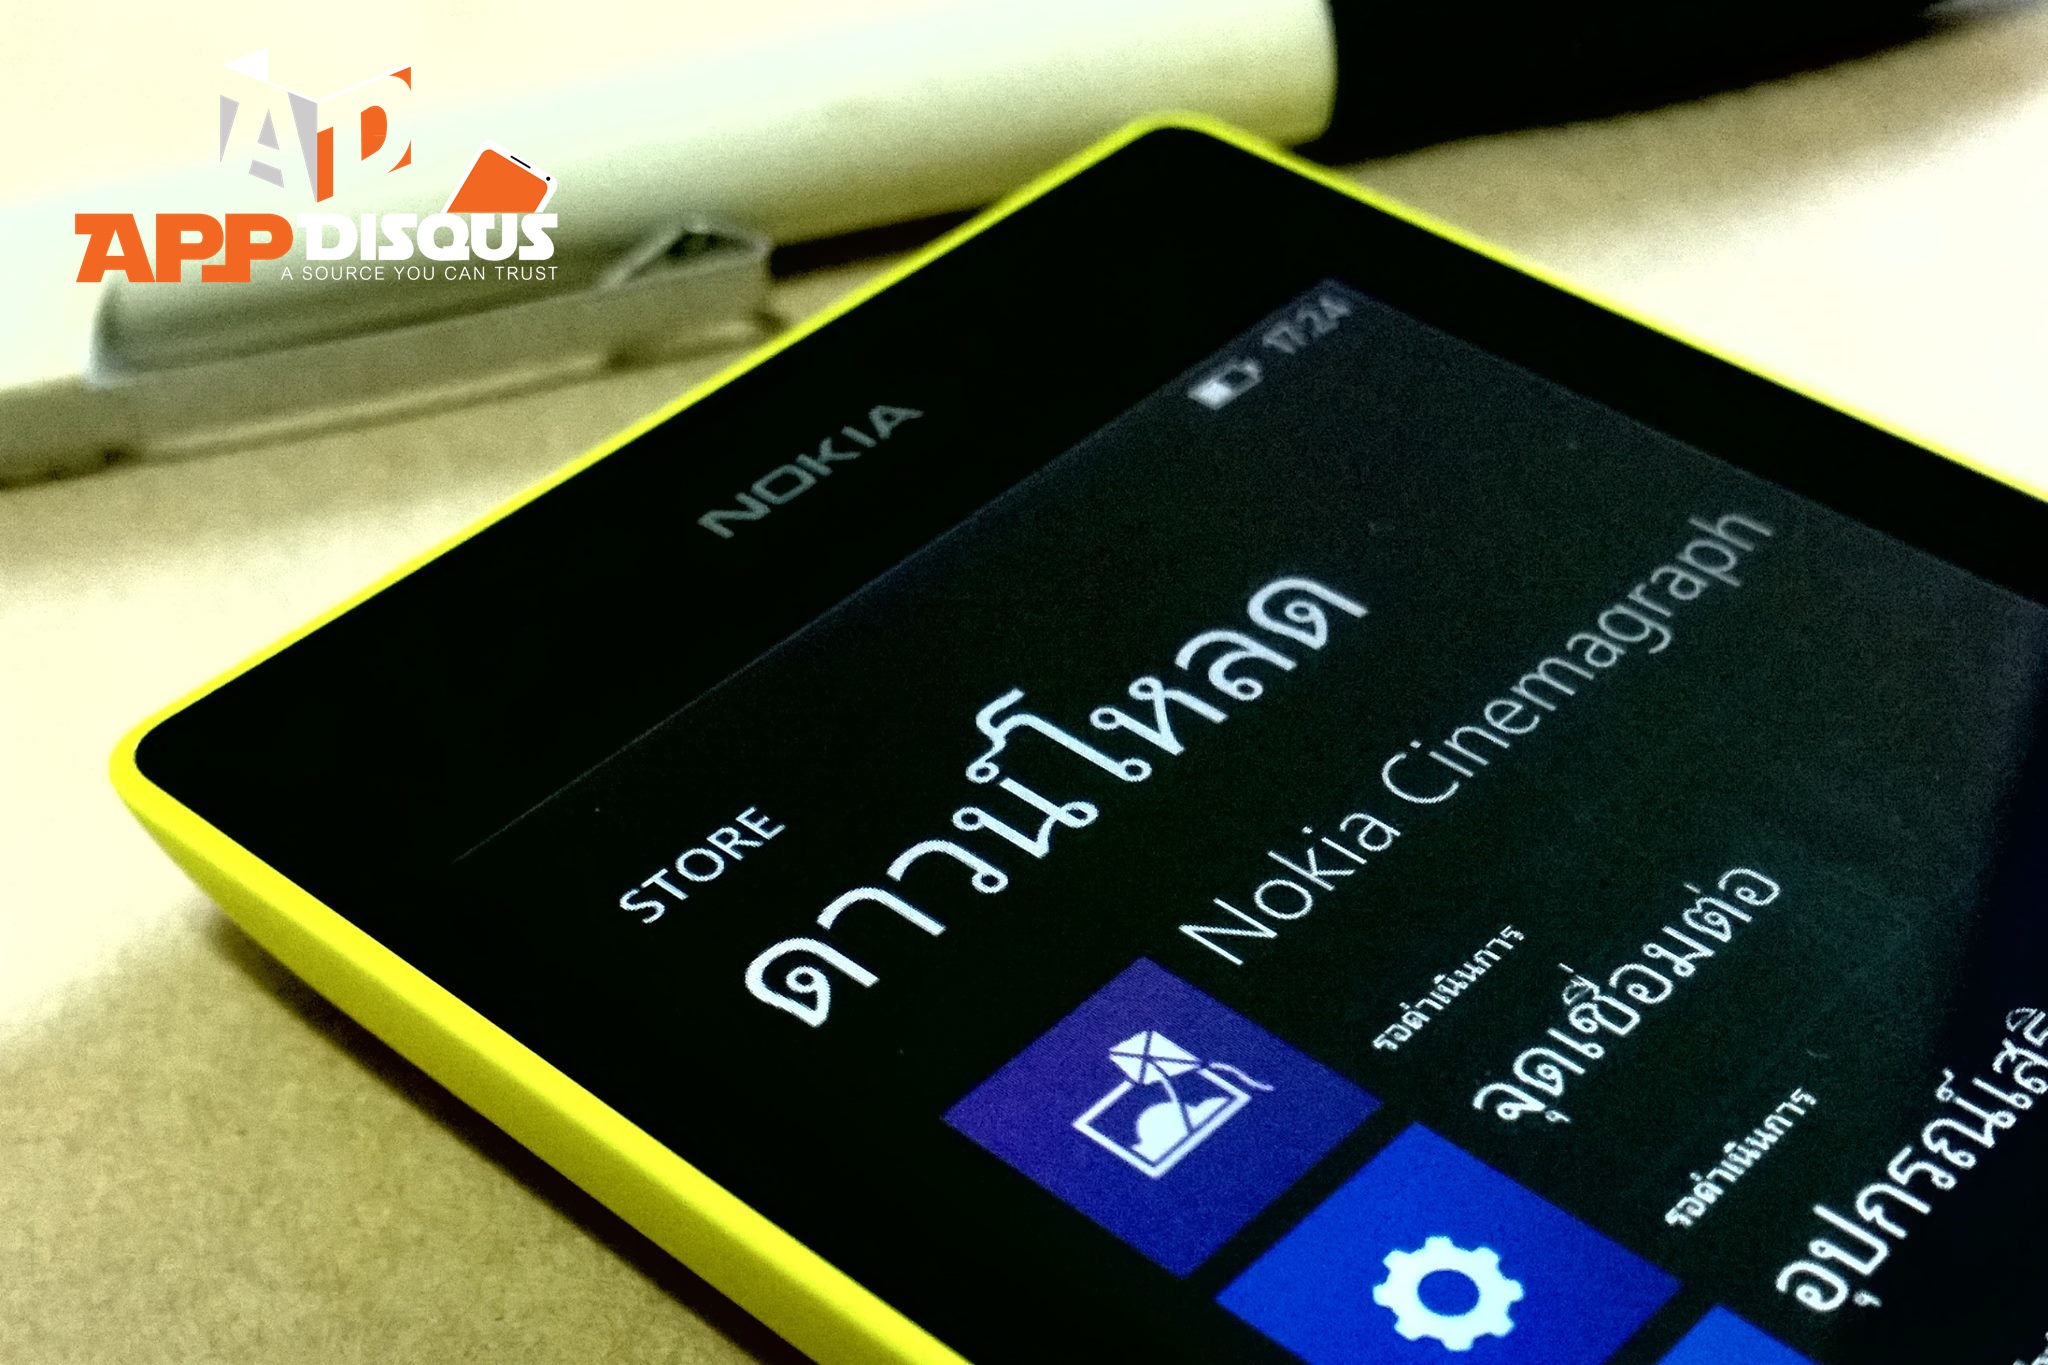 1524098 750331521653087 1351143177 o | NOKIA | [TIPS] แนะนำวิธีการตั้งค่าเริ่มต้นการใช้งาน Nokia Lumia สำหรับระบบปฏิบัติการ Windows Phone 8 สไตล์ LoAxiom